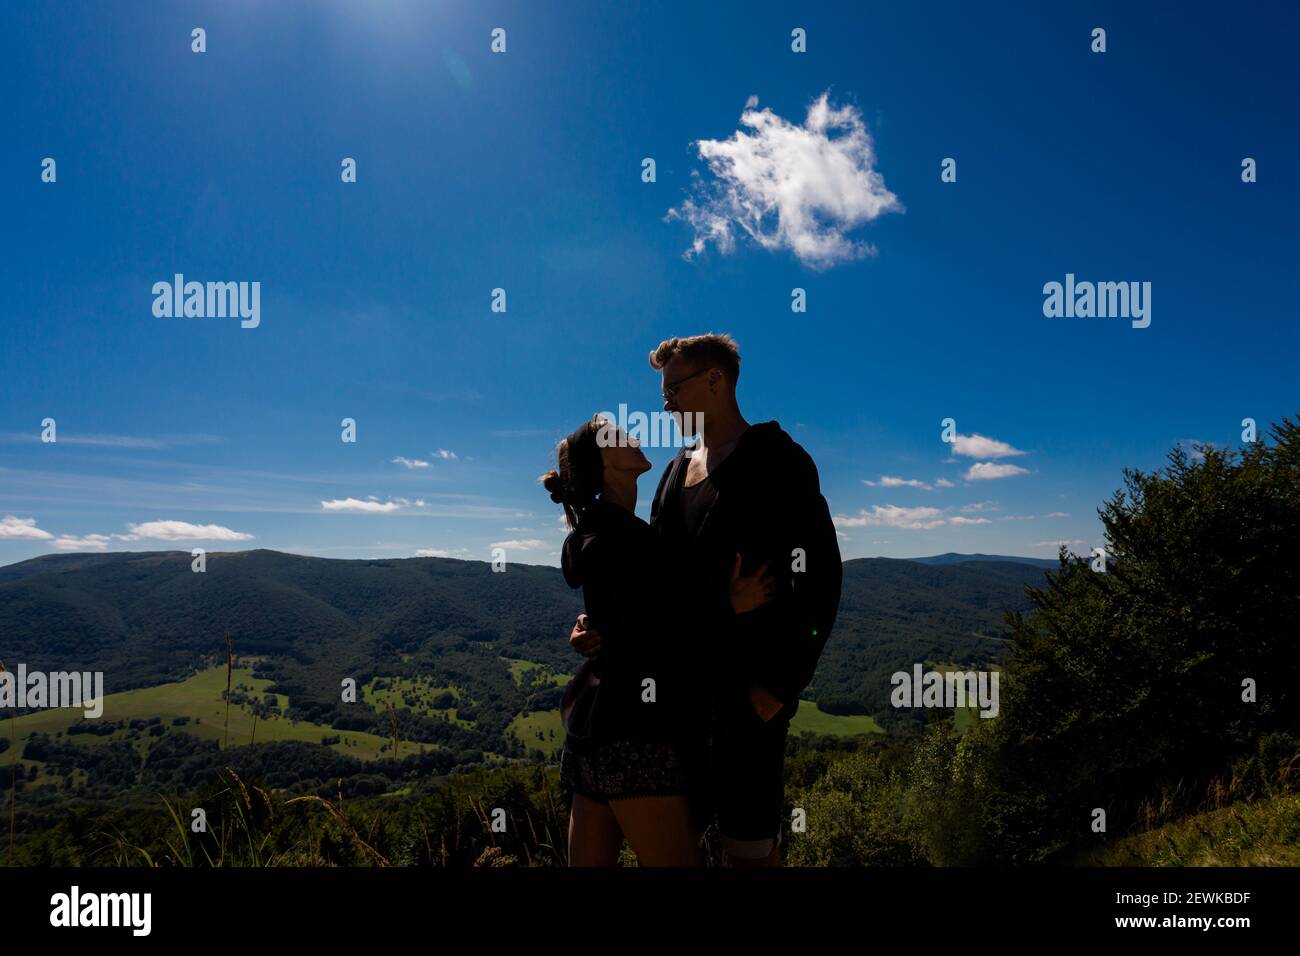 Beautifulyoung happy couple in polish Bieszczady mountains during summer. Trail from Ustrzyki via Carynska Meadow to Brzegi, Bieszczadzki Park Narodow Stock Photo